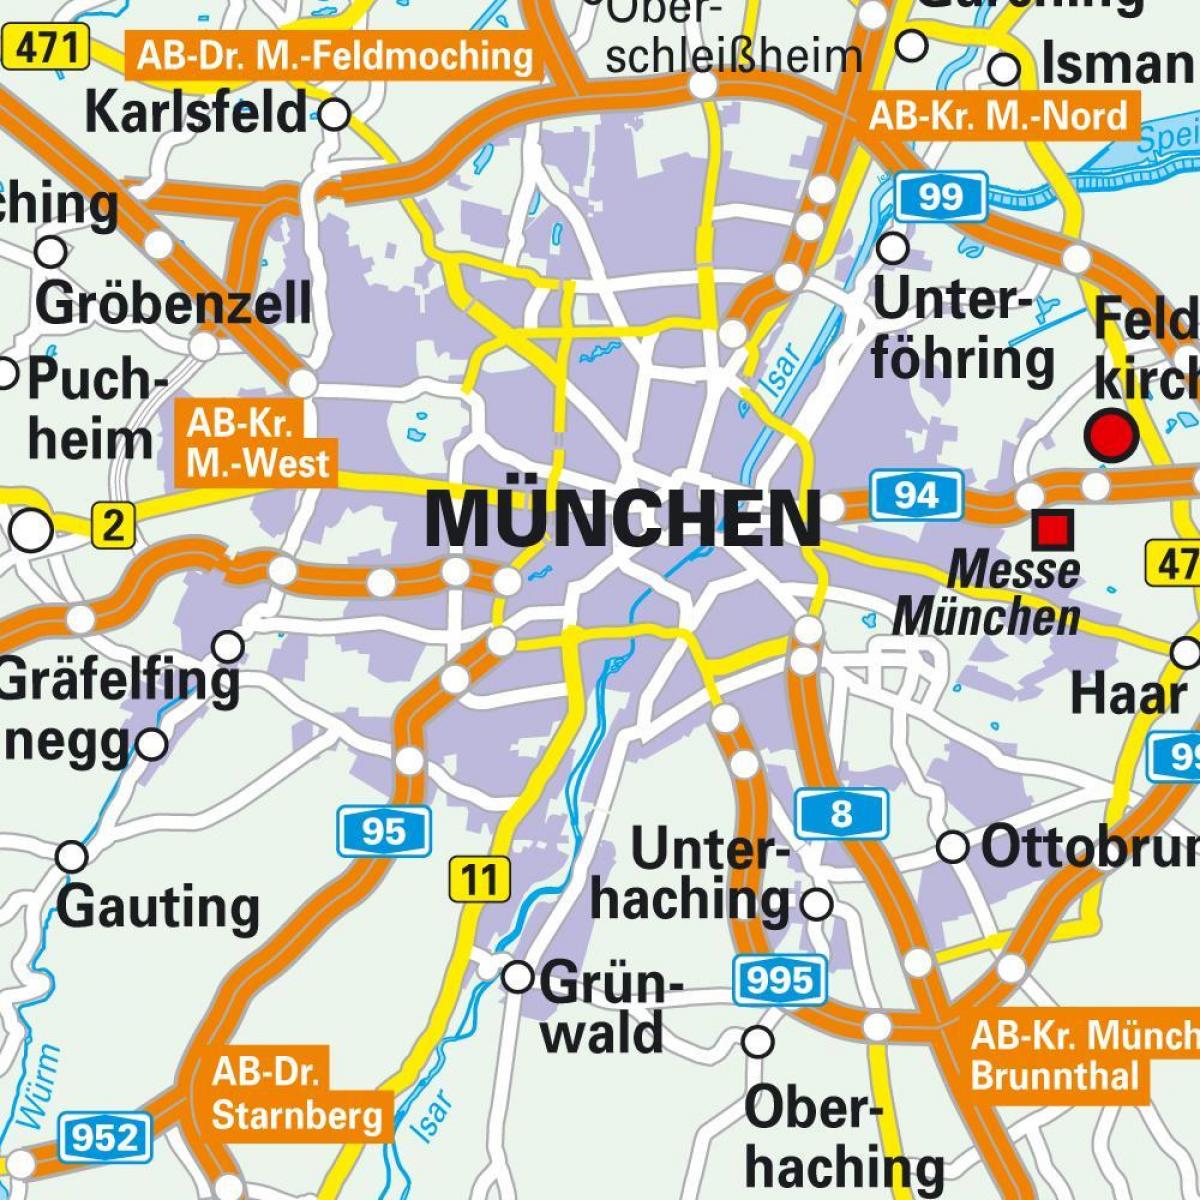 минхен центарот на мапата